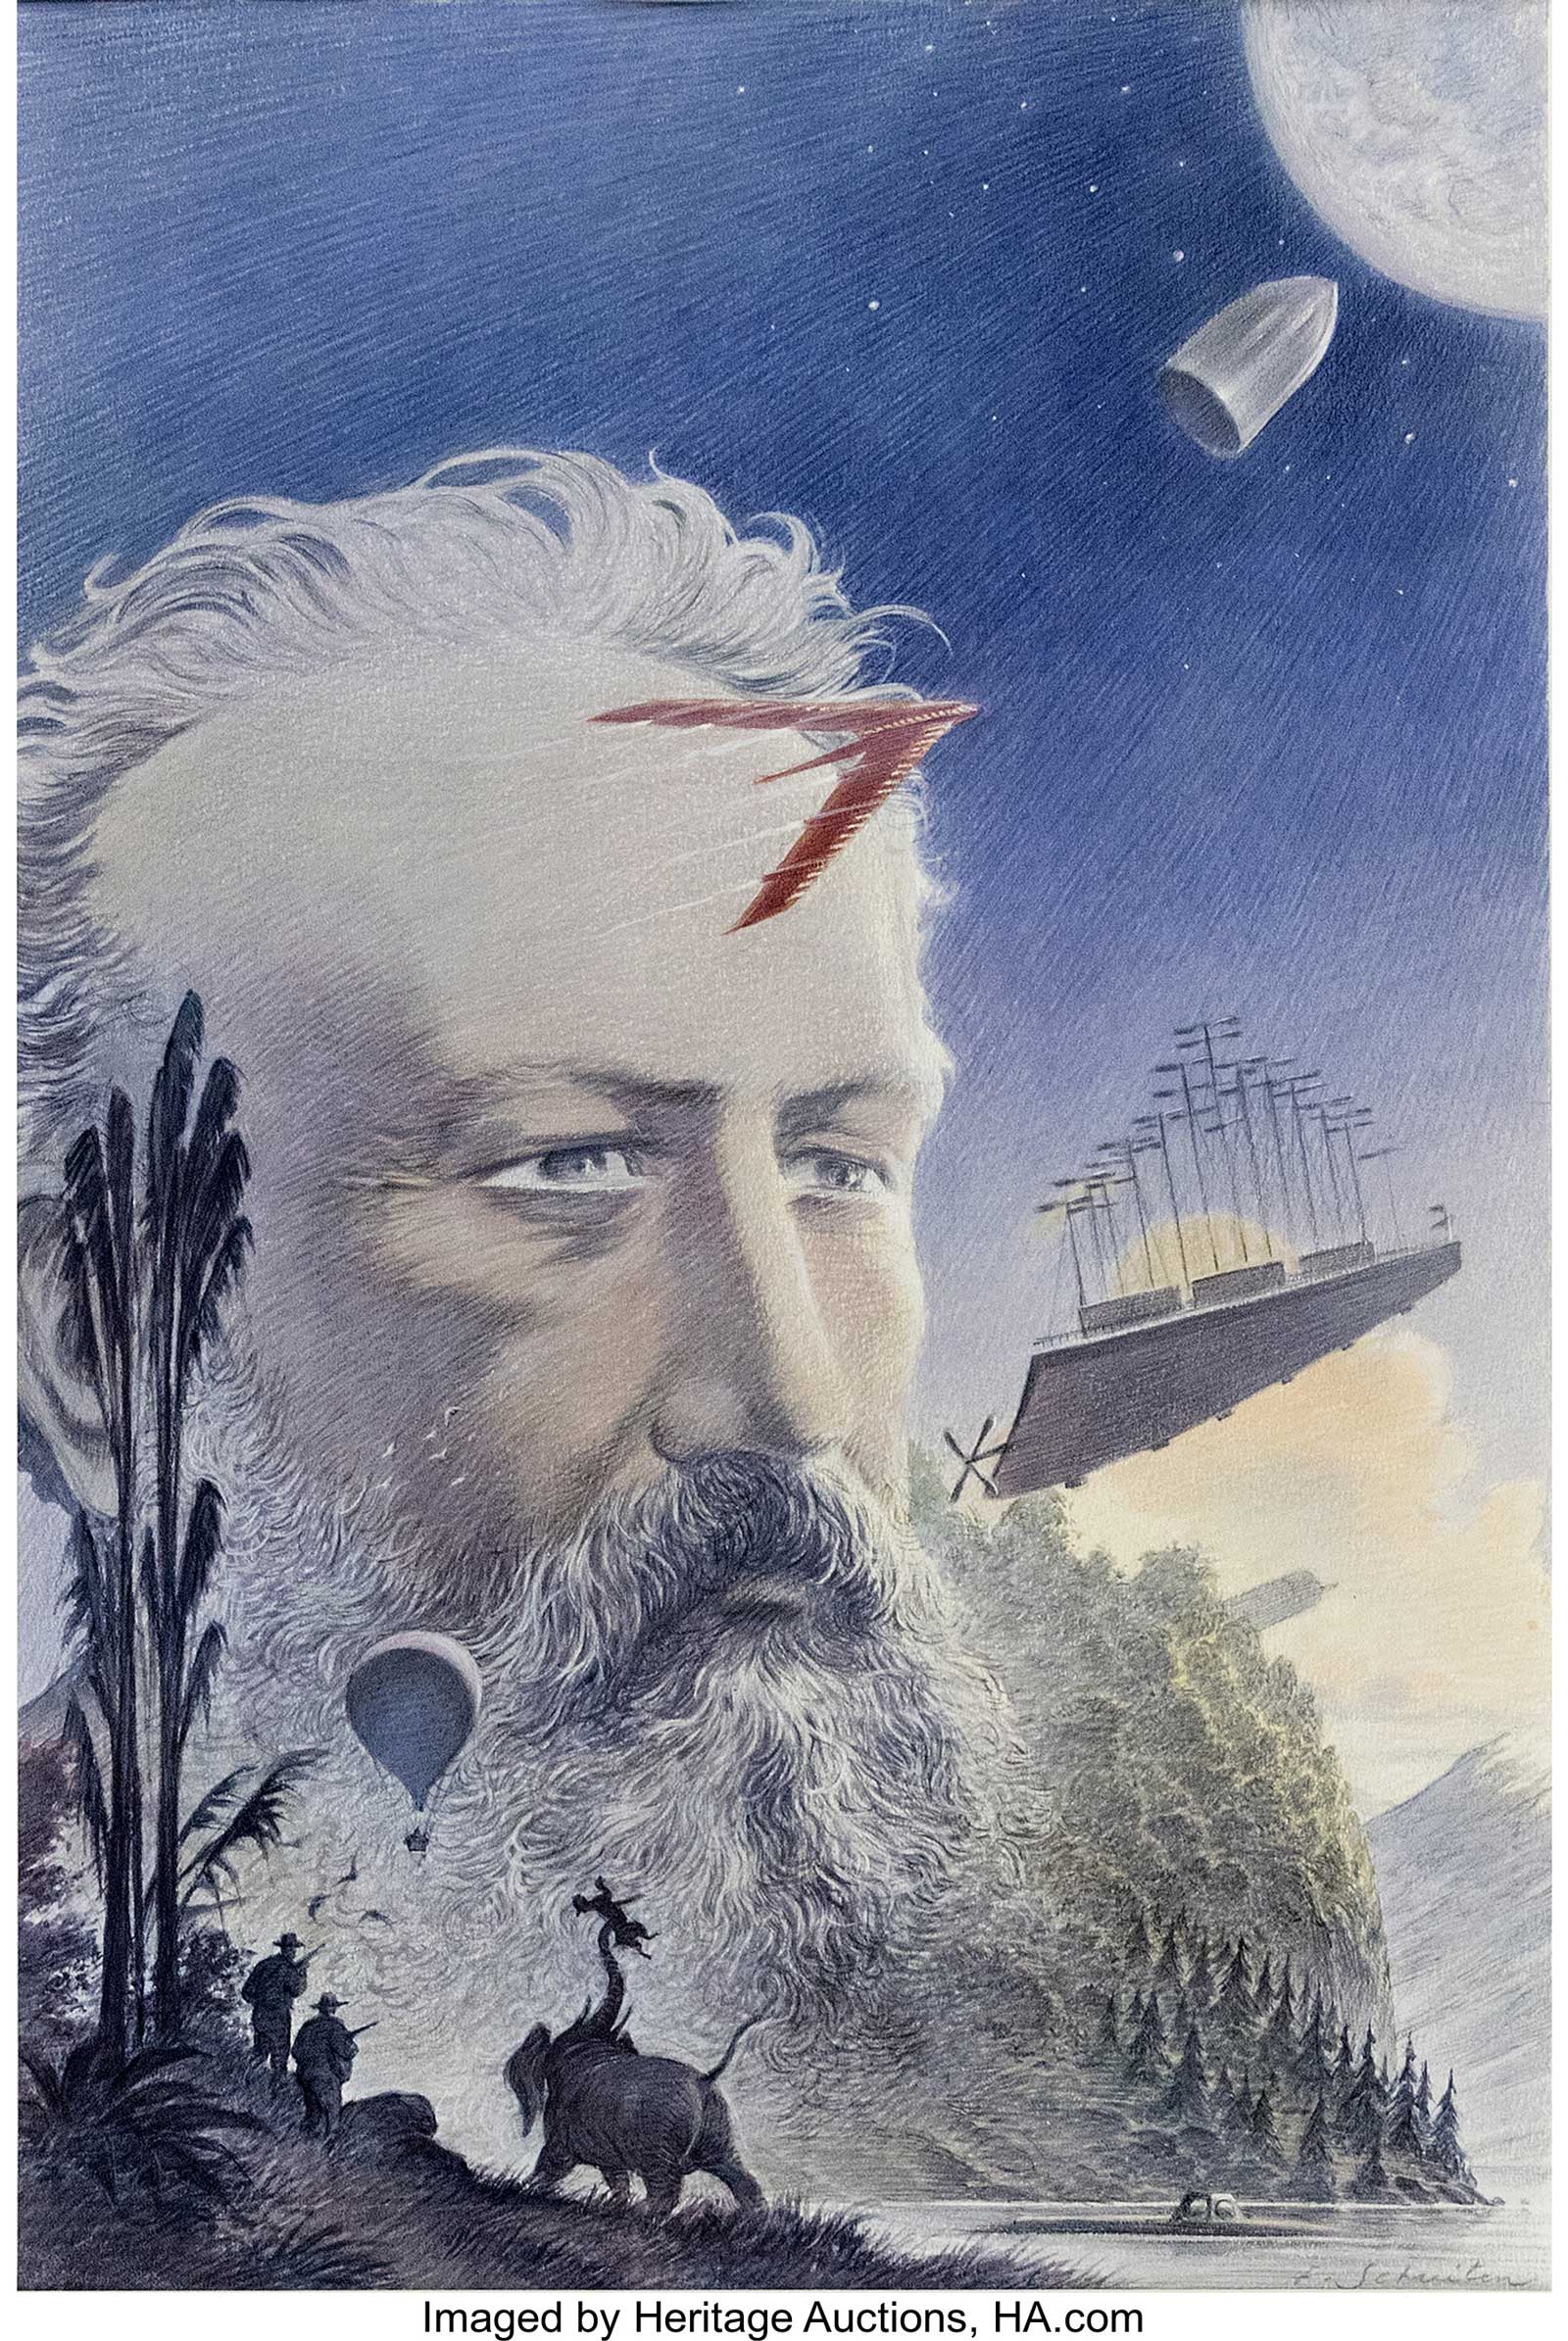 François Schuiten Jules Verne Illustration art (2003)